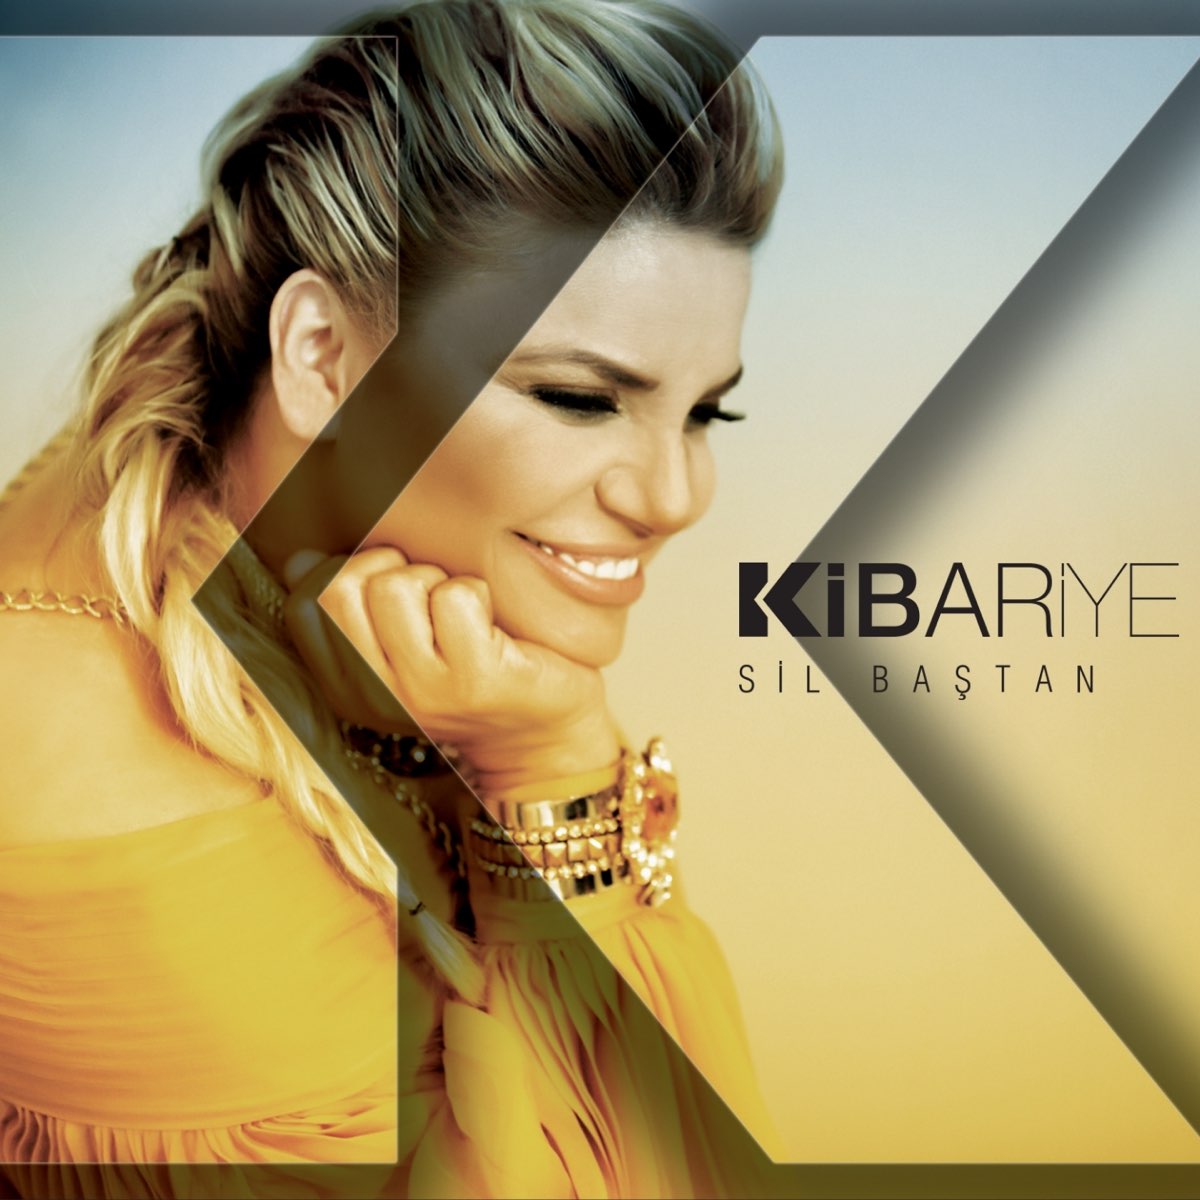 Sil Baştan - Single - Album by Kibariye - Apple Music